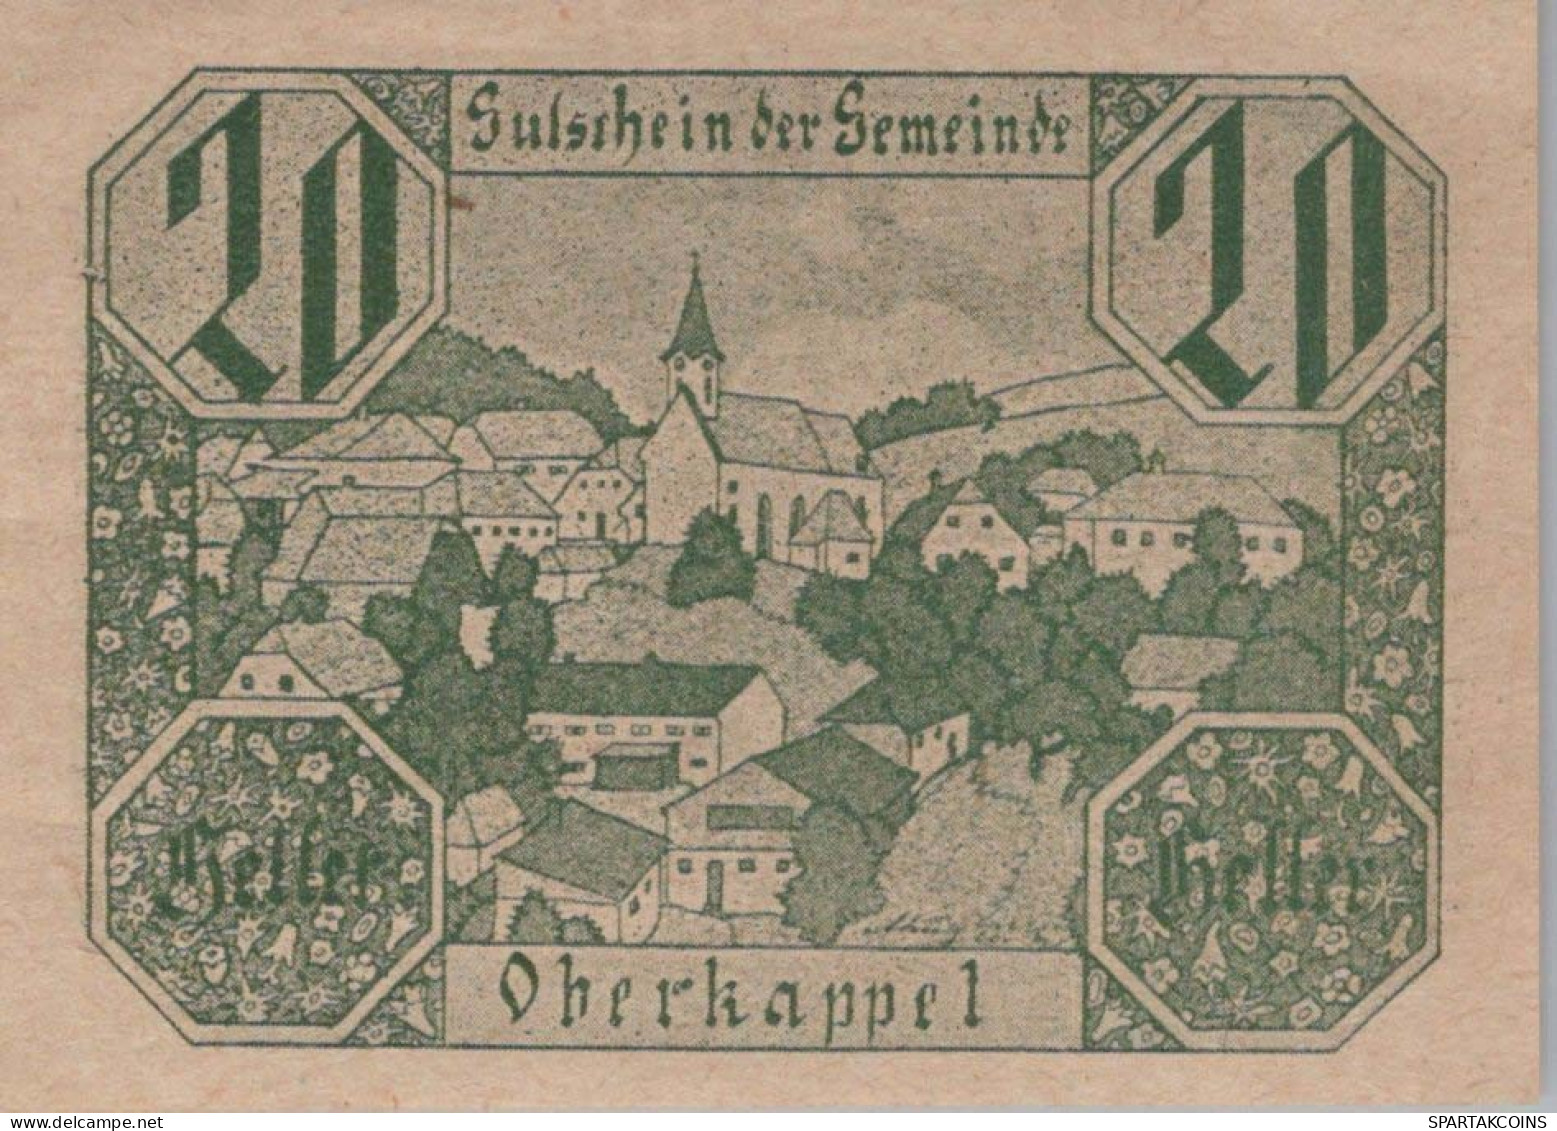 20 HELLER 1920 Stadt OBERKAPPEL Oberösterreich Österreich Notgeld #PE499 - [11] Local Banknote Issues